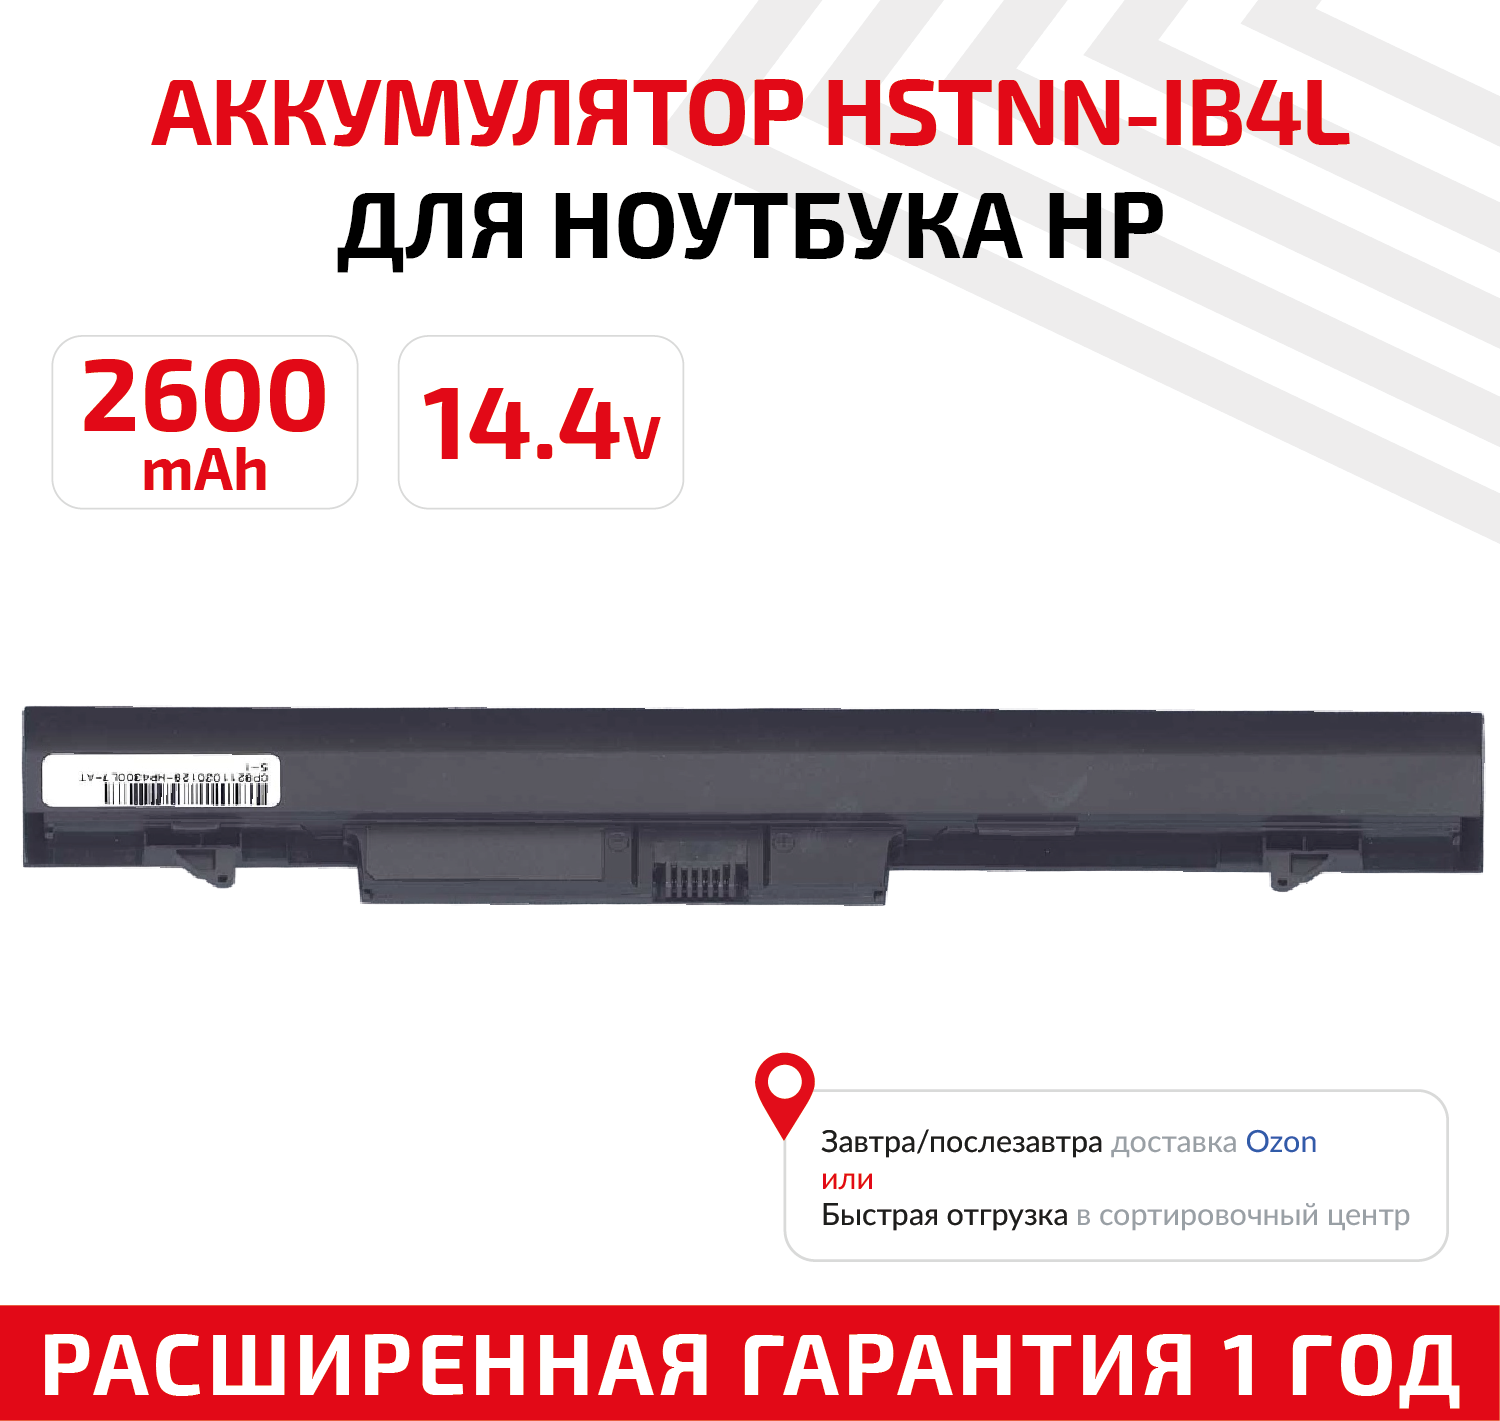 Аккумулятор (АКБ, аккумуляторная батарея) HSTNN-IB4L, RA04 для ноутбука HP ProBook 430 G1, 430 G2, 14.4В, 2600мАч